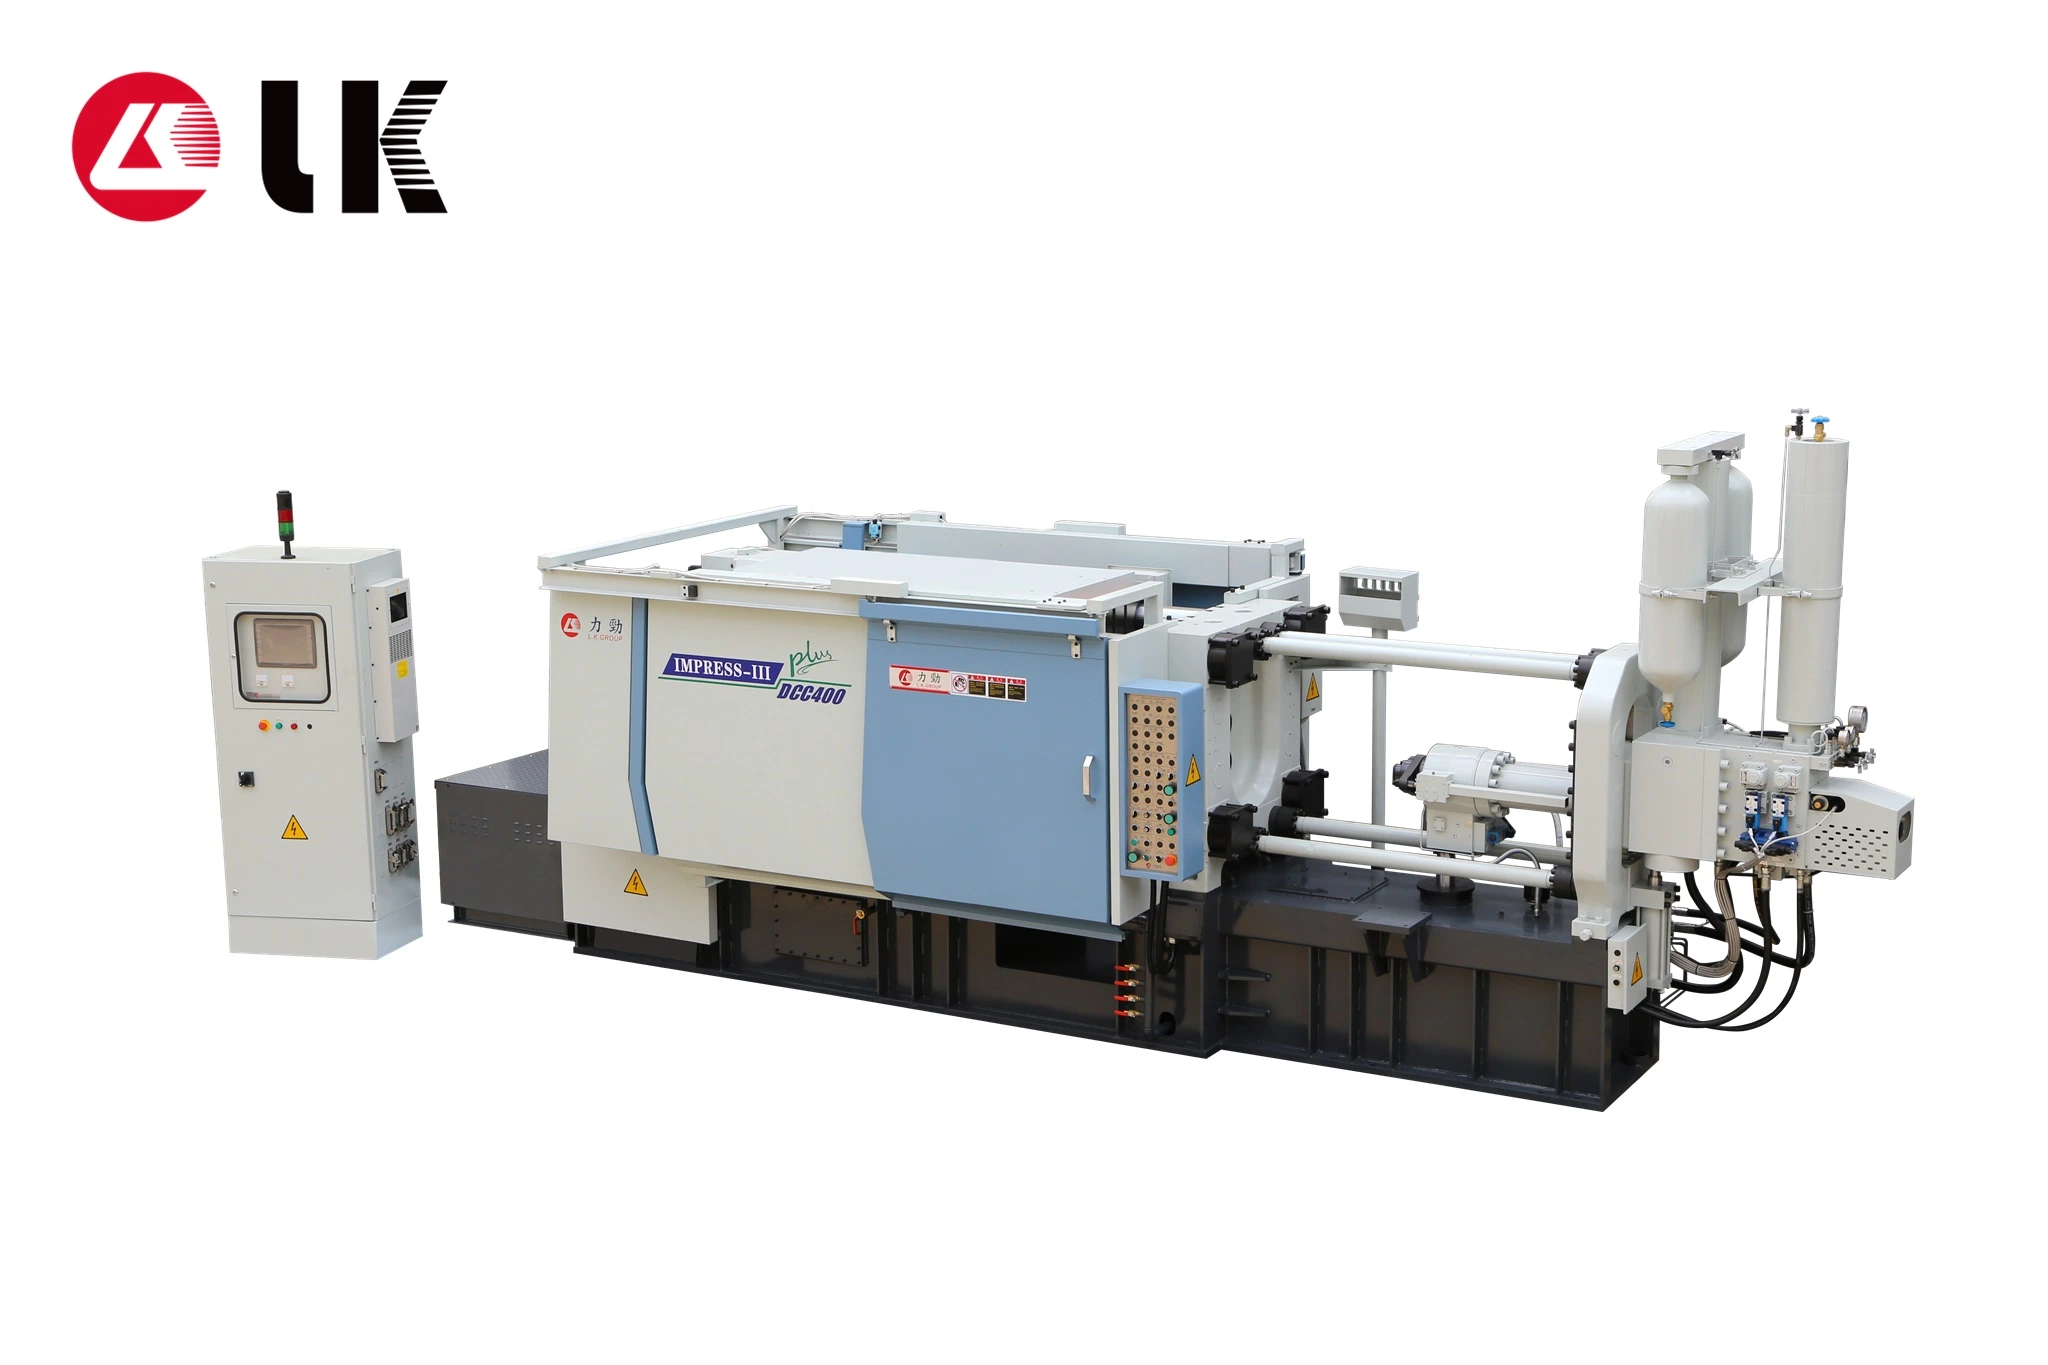 ماكينة الصب بالألومنيوم الحلو القياسي LK-800T CLEMK CLEMAT CLEMing قياسية للحجف البارد